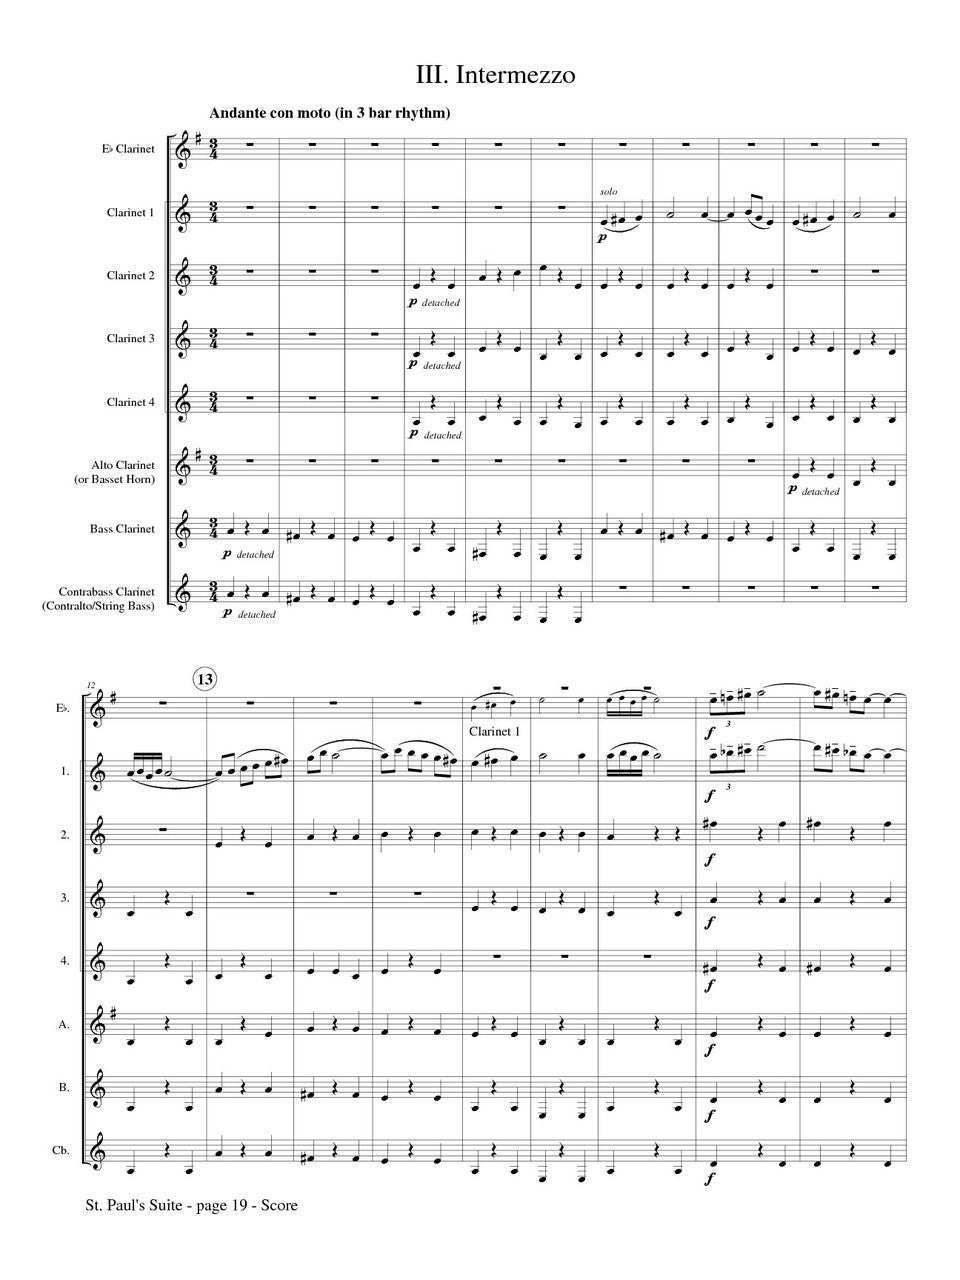 Holst (arr. Matt Johnston) - St. Paul's Suite for Clarinet Choir